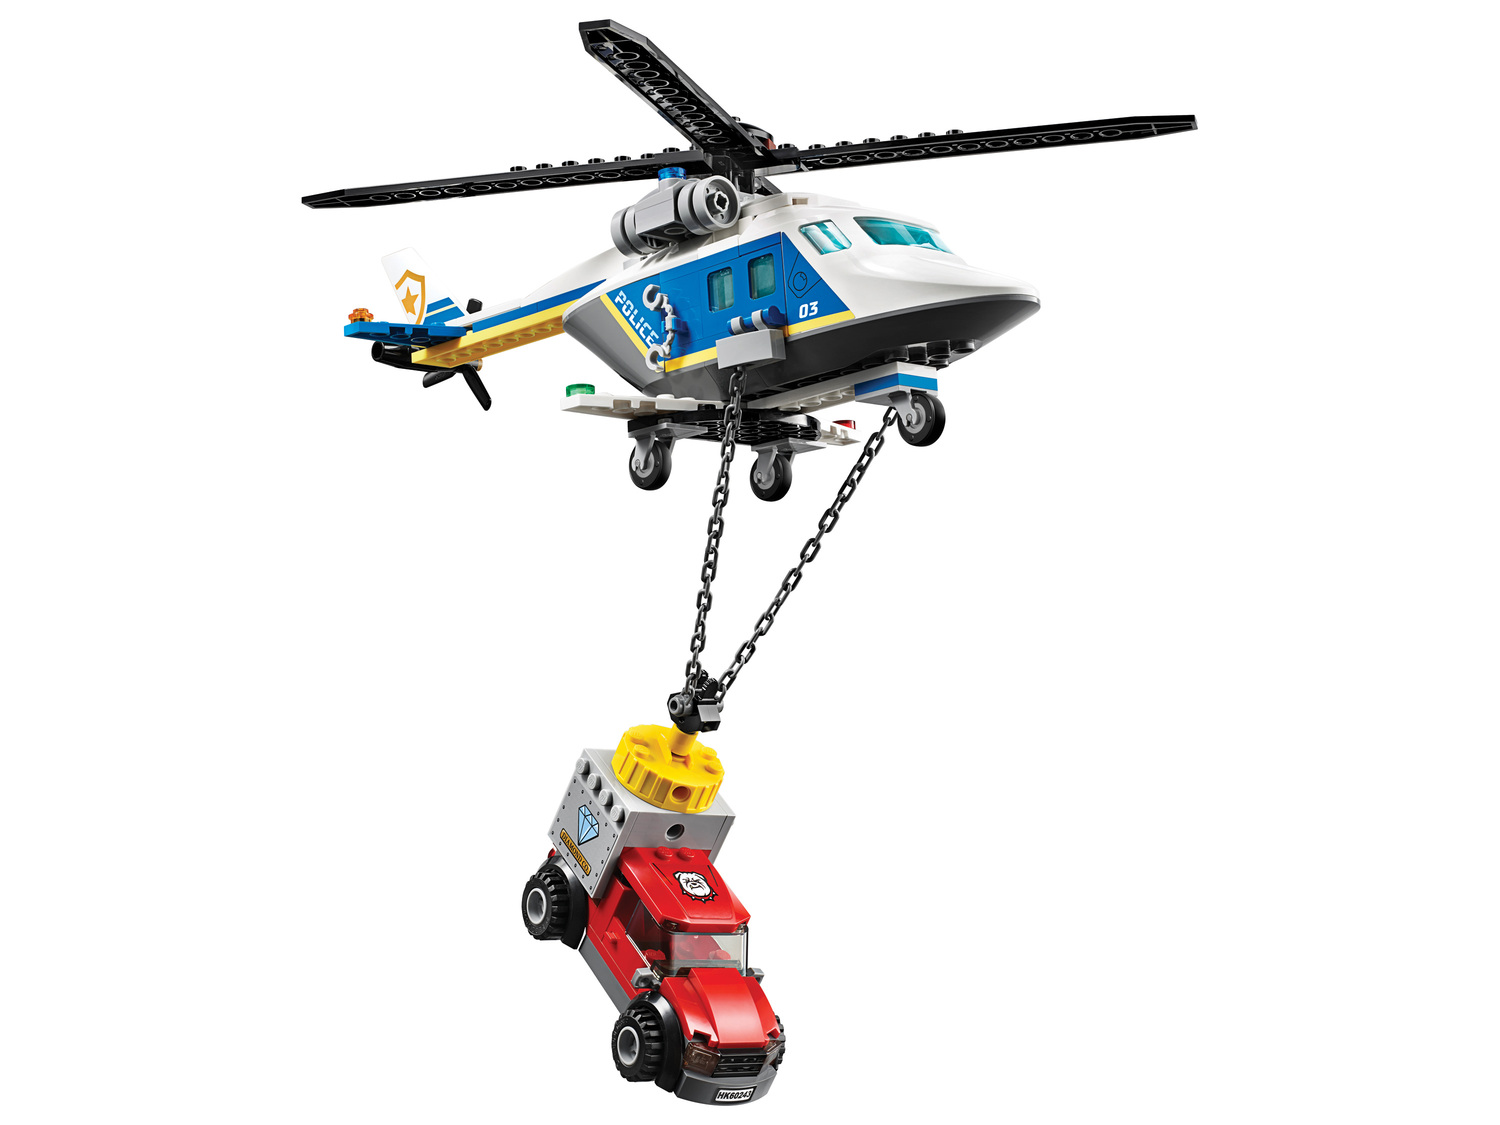 Klocki LEGO 60243 Lego, cena 99,00 PLN  
-  Pościg helikopterem policyjnym
Opis